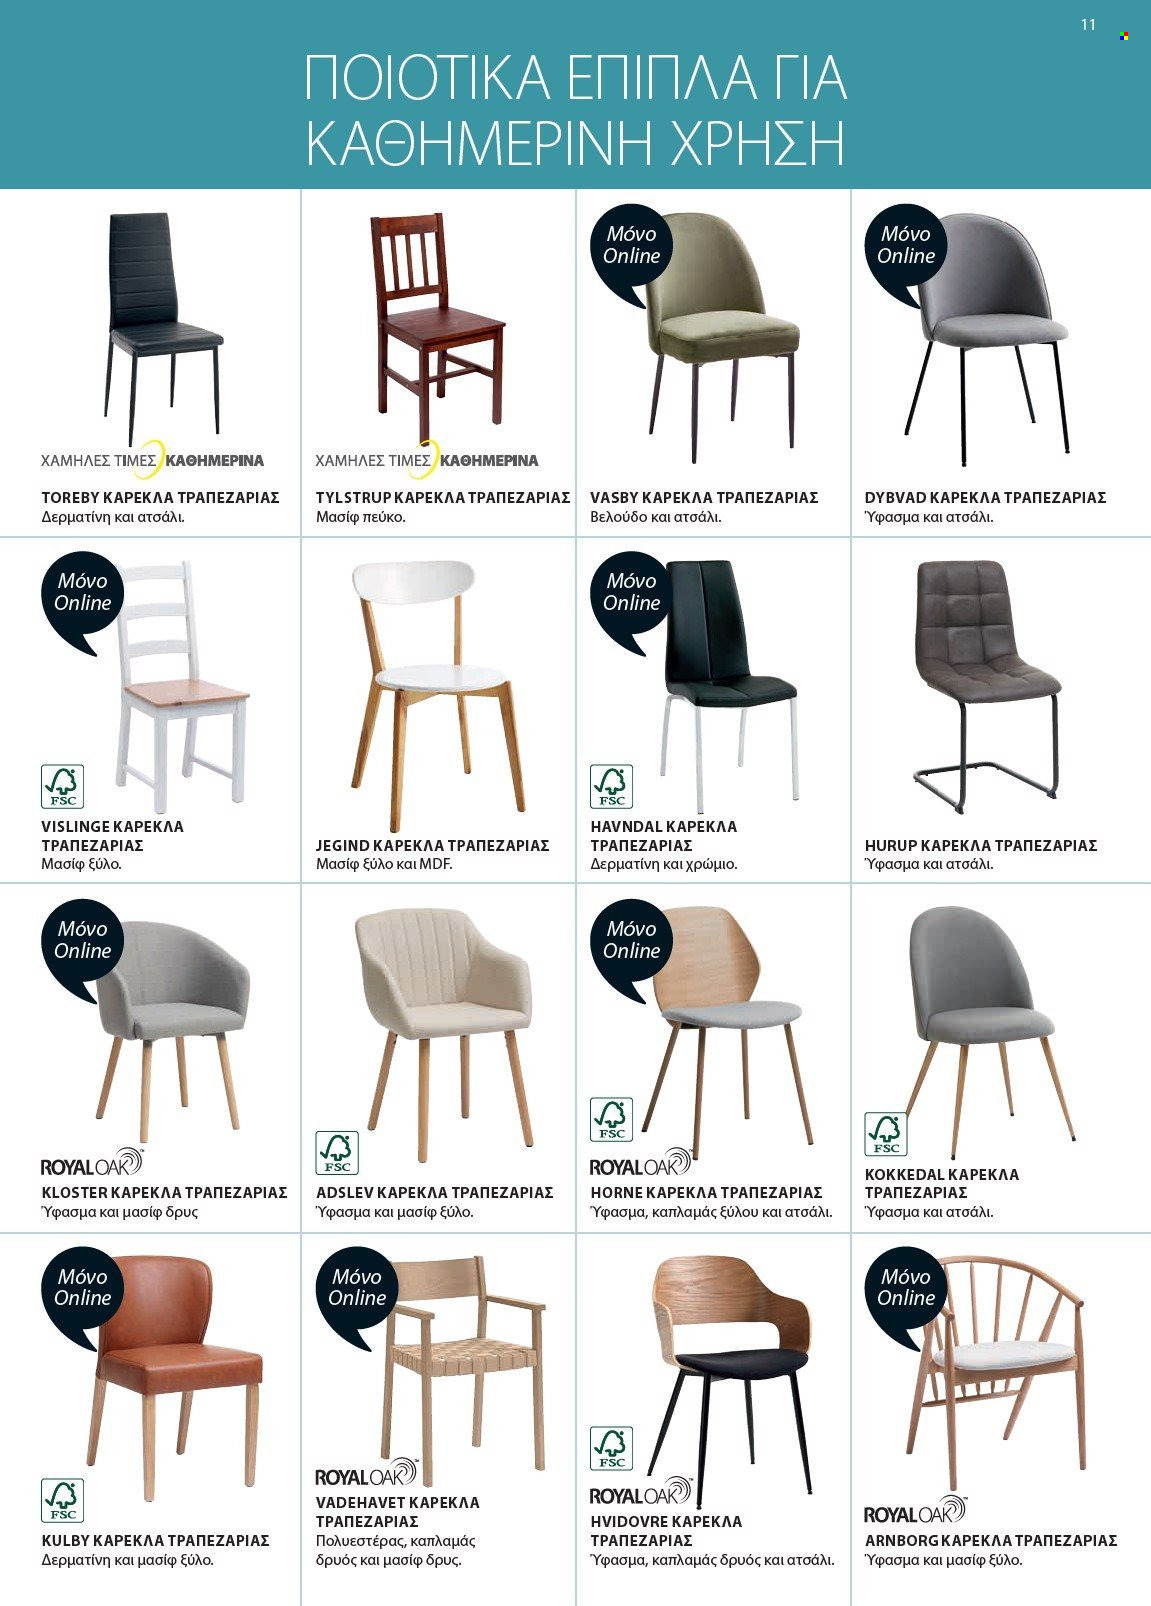 thumbnail - Φυλλάδια JYSK - Εκπτωτικά προϊόντα - καρέκλα, καρέκλα τραπεζαρίας. Σελίδα 11.